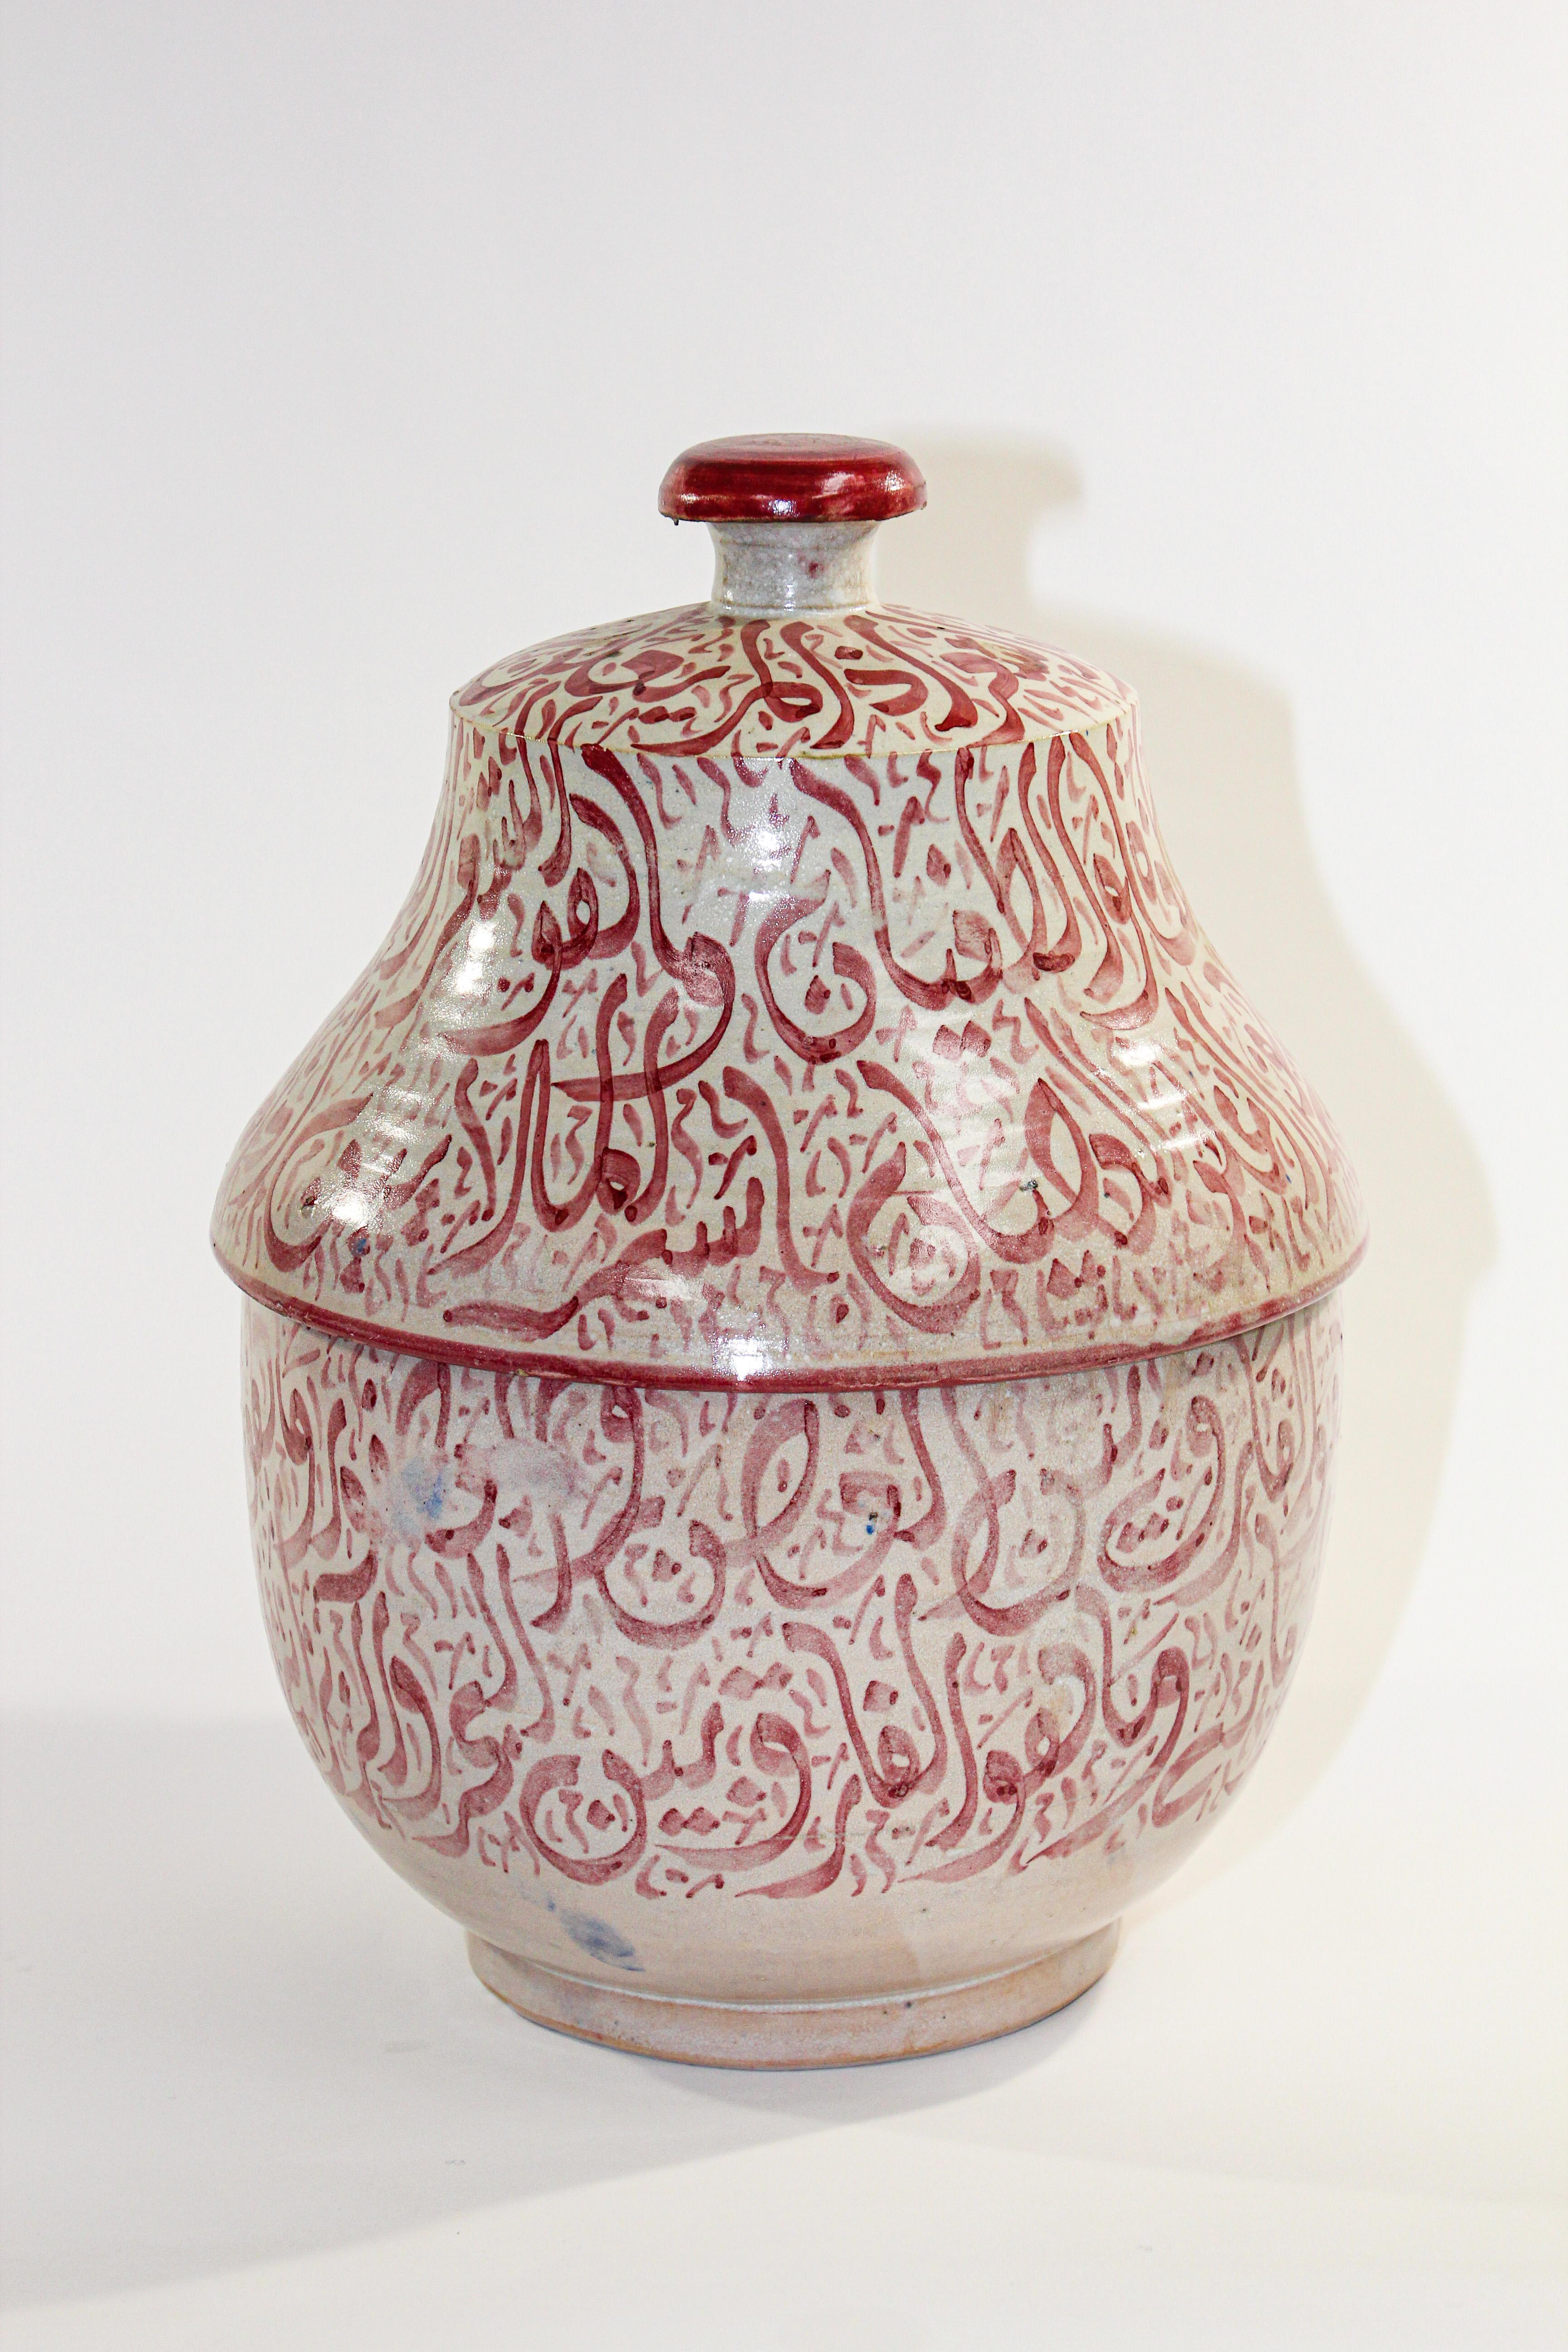 Urne marocaine en céramique émaillée avec couvercle, provenant de Fès. 
Céramique de style mauresque fabriquée et peinte à la main avec une écriture arabe calligraphiée en rose.
Ce type d'écriture calligraphique s'appelle le Lettrisme, c'est une